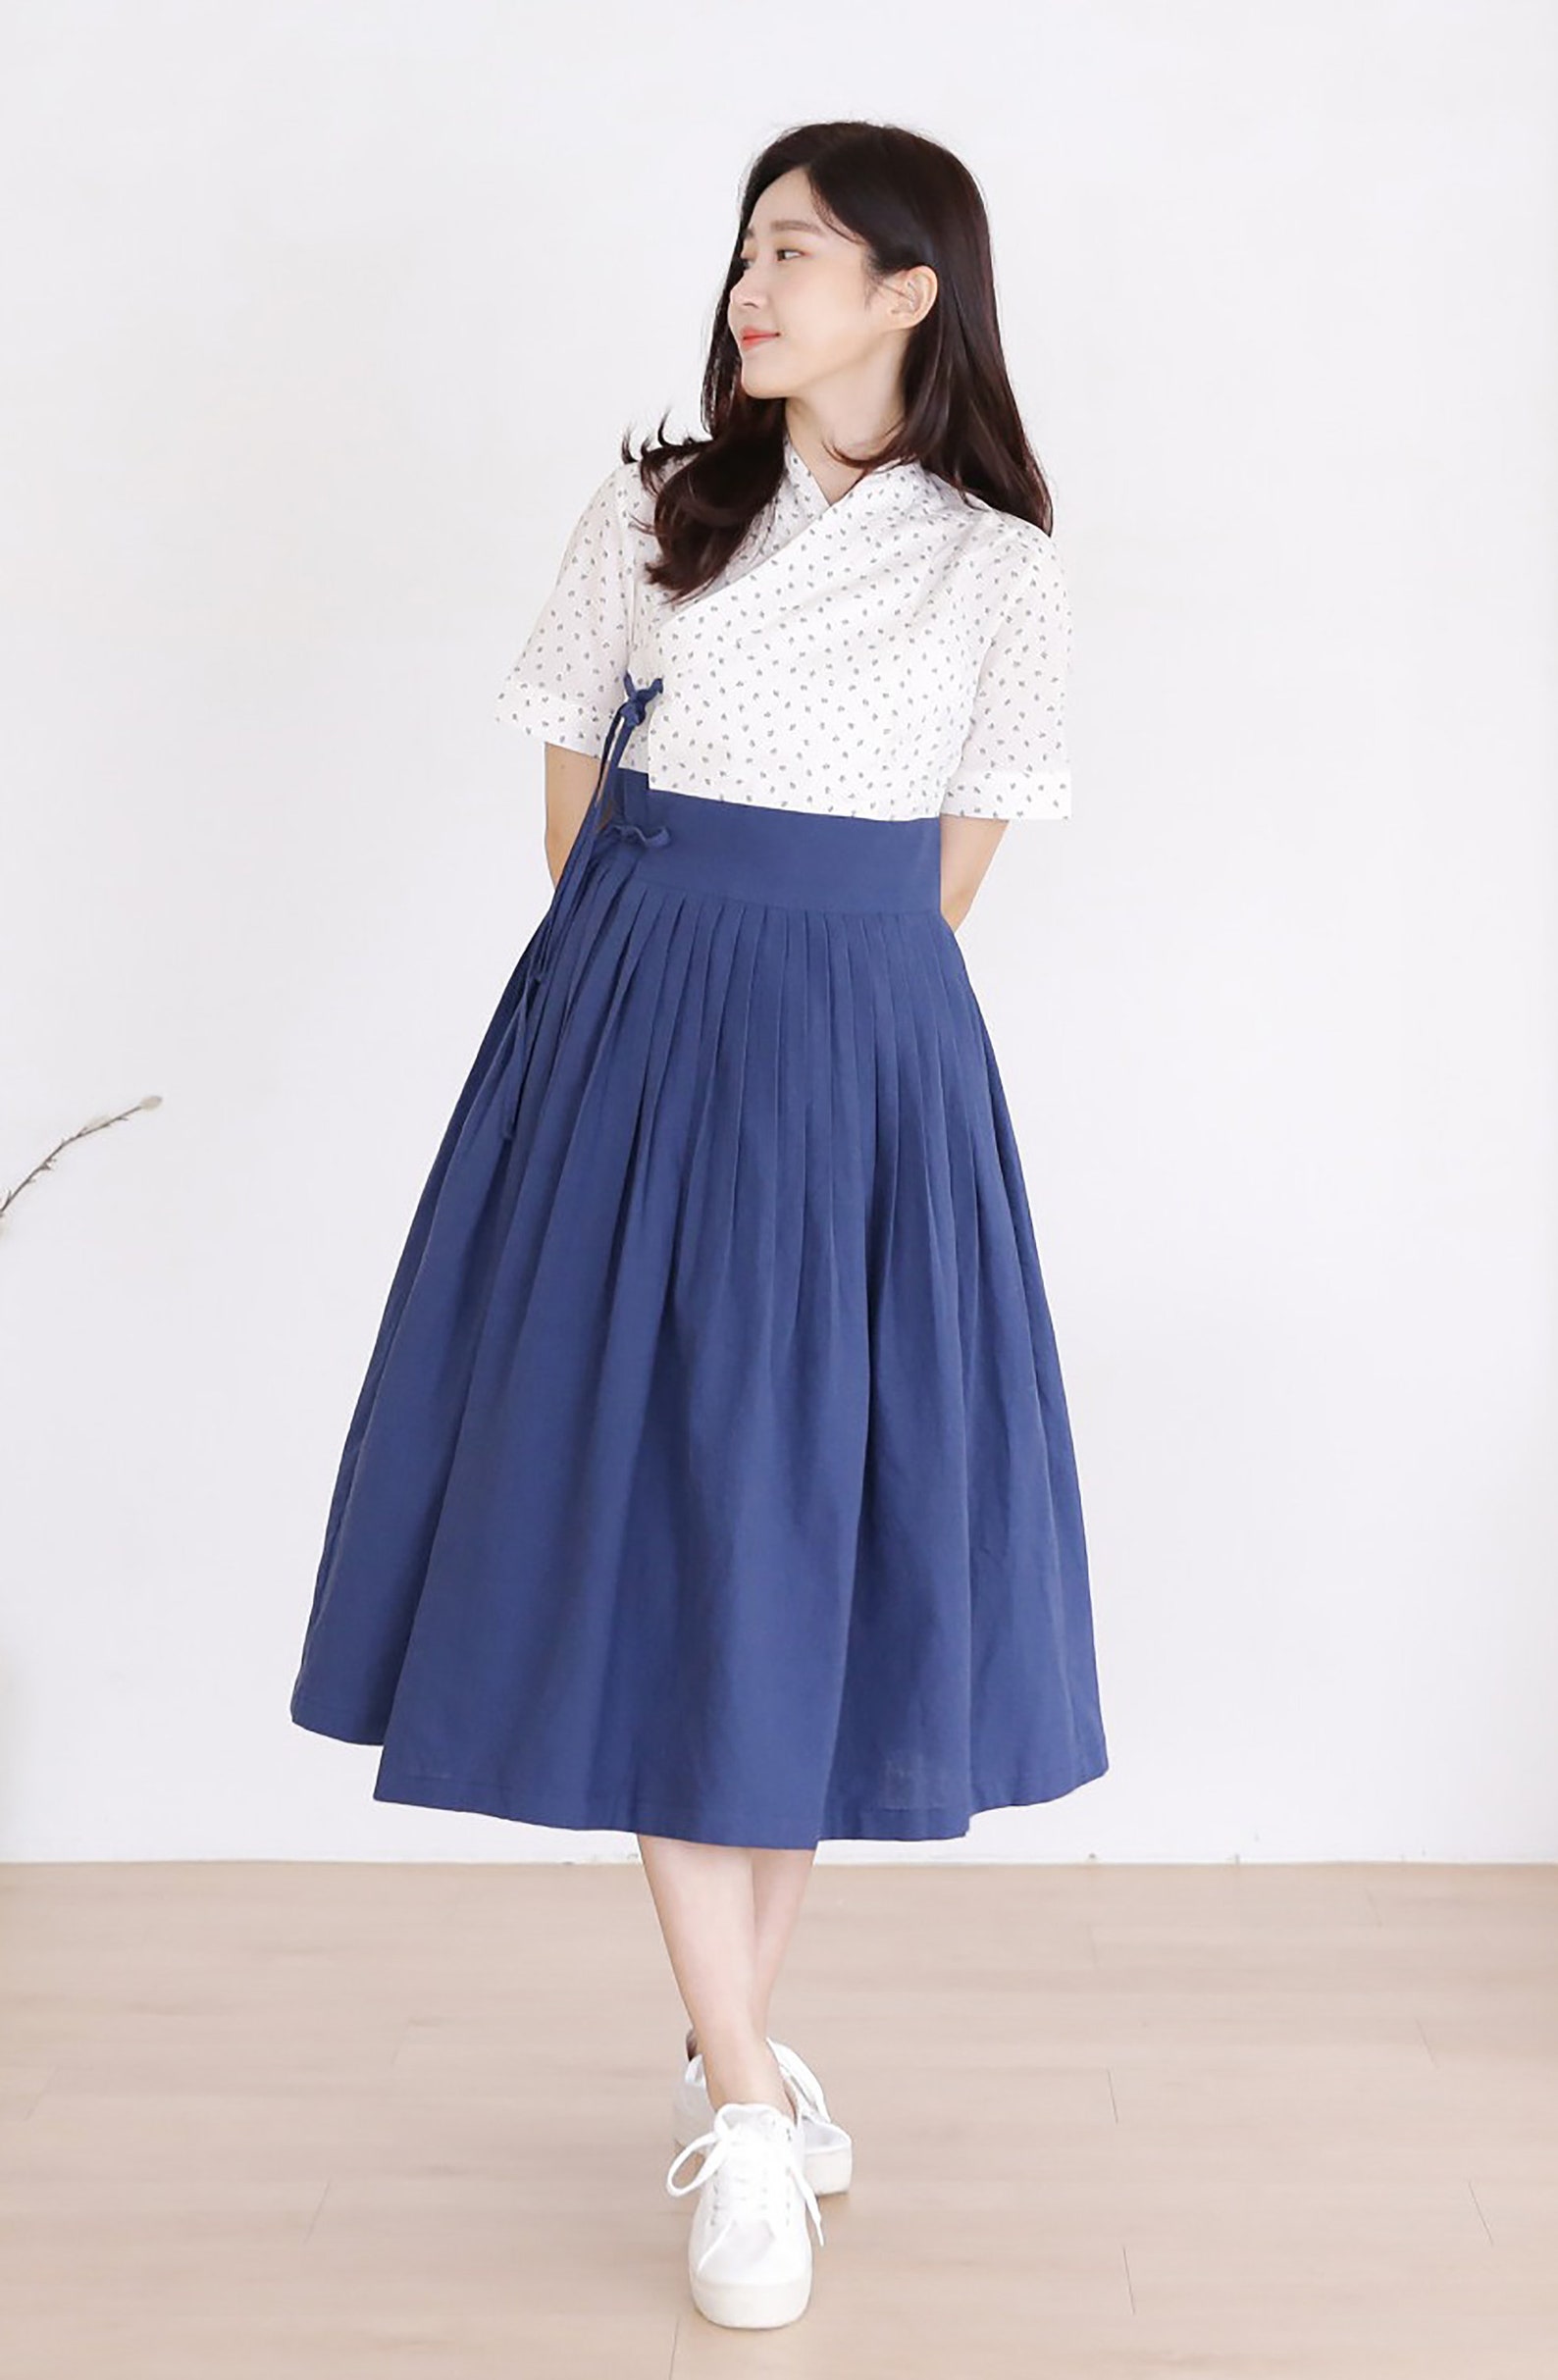 Modern Hanbok Korea Dress Women's Female Girl Junior Daily | Etsy